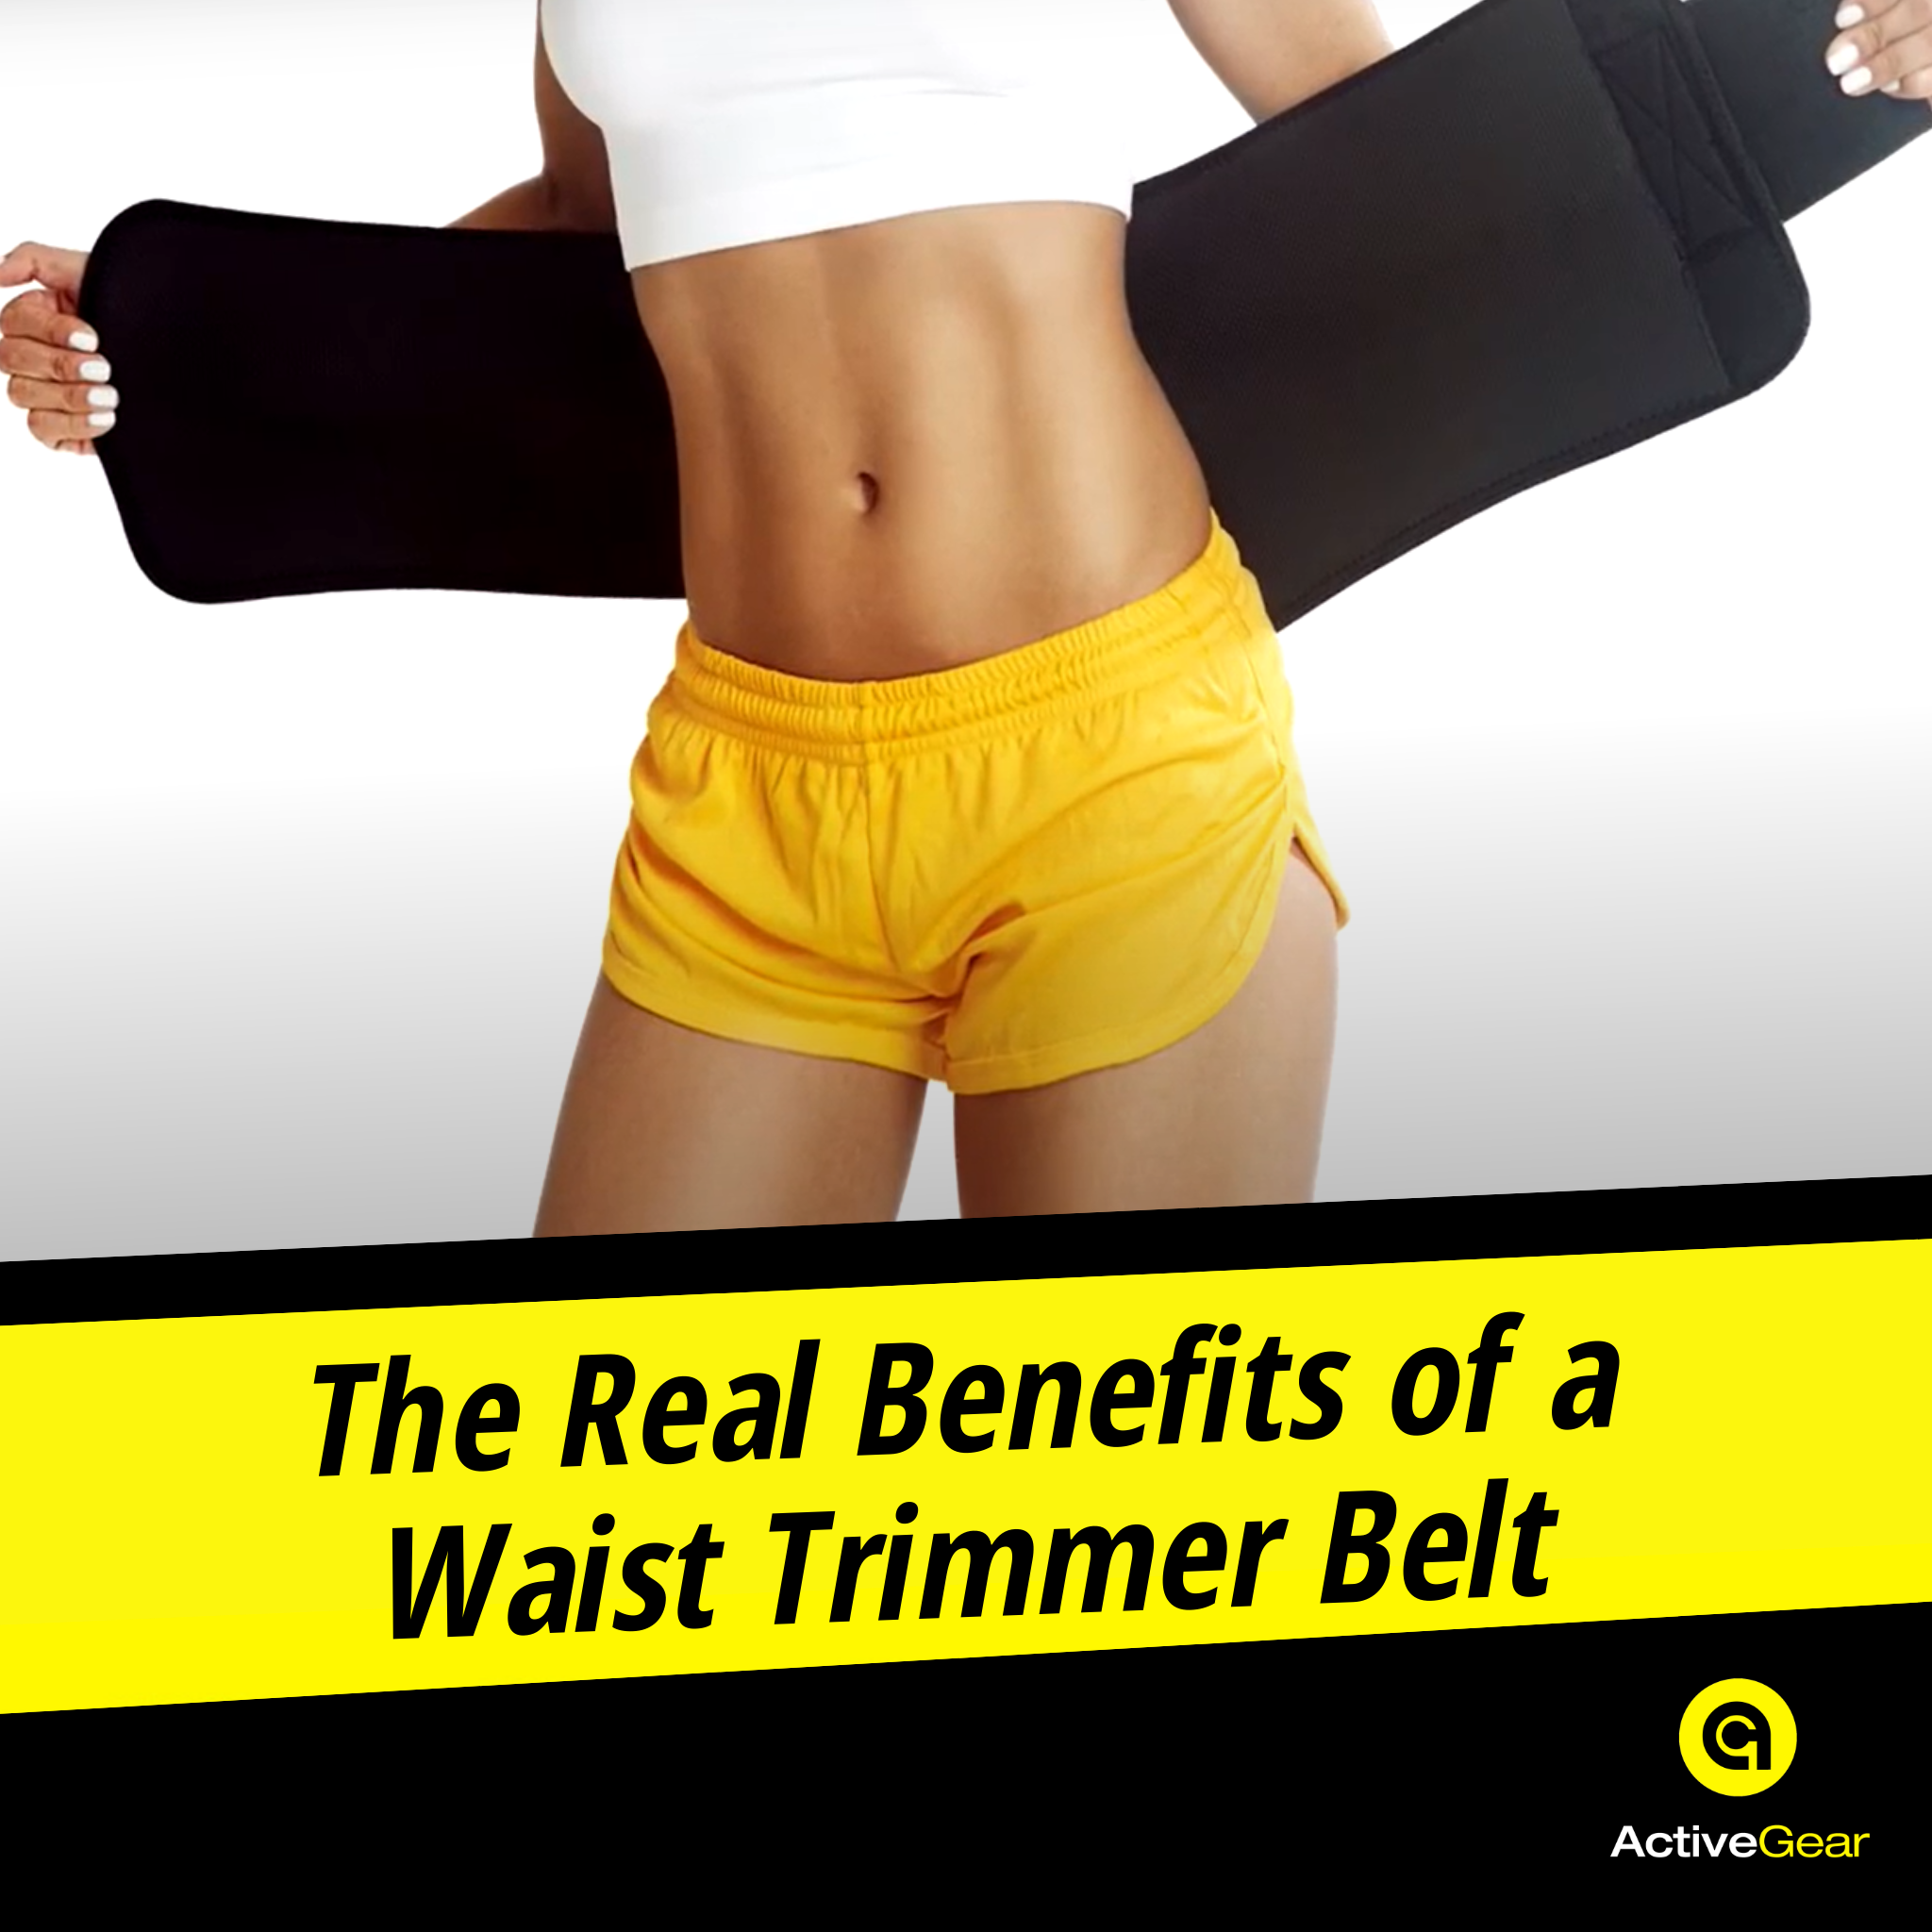 Do Slimmer Belts Work?